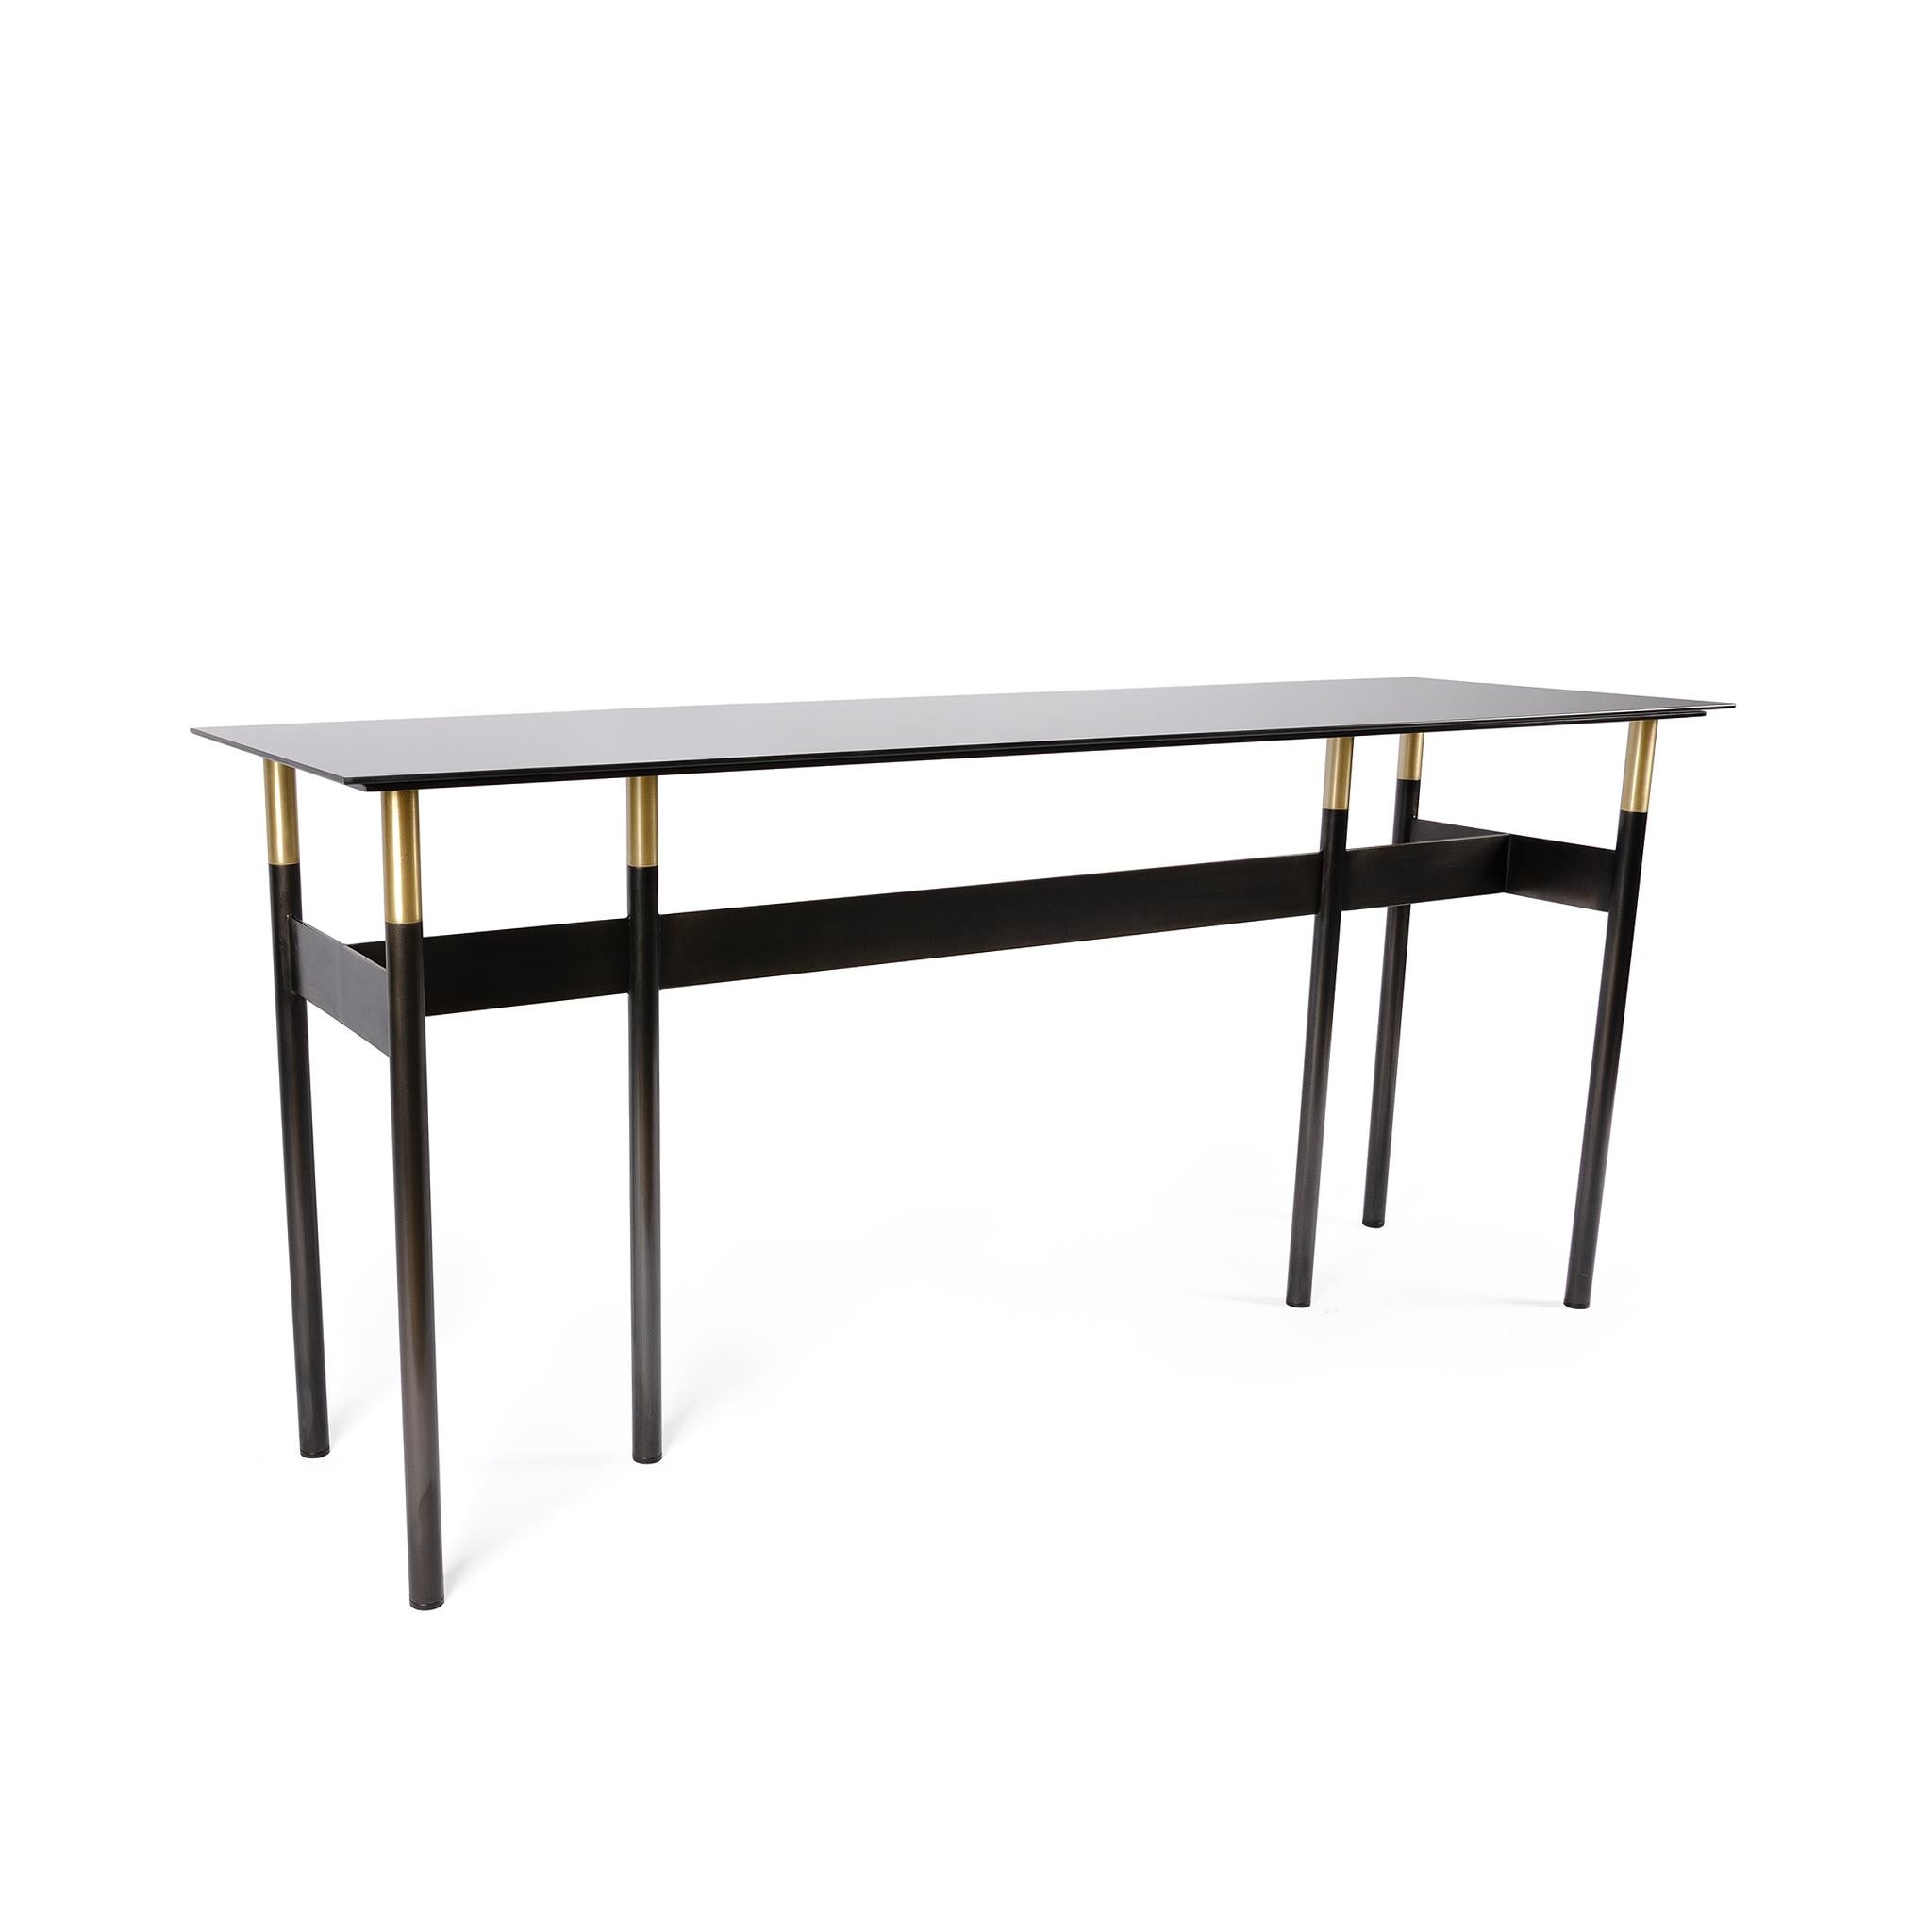 La table Lank est une table console rectangulaire d'une élégance discrète. Les tons sombres de l'acier linéaire noirci fini à la main et du plateau en verre miroir teinté contrastent avec les détails en laiton brillant pour une table unique et